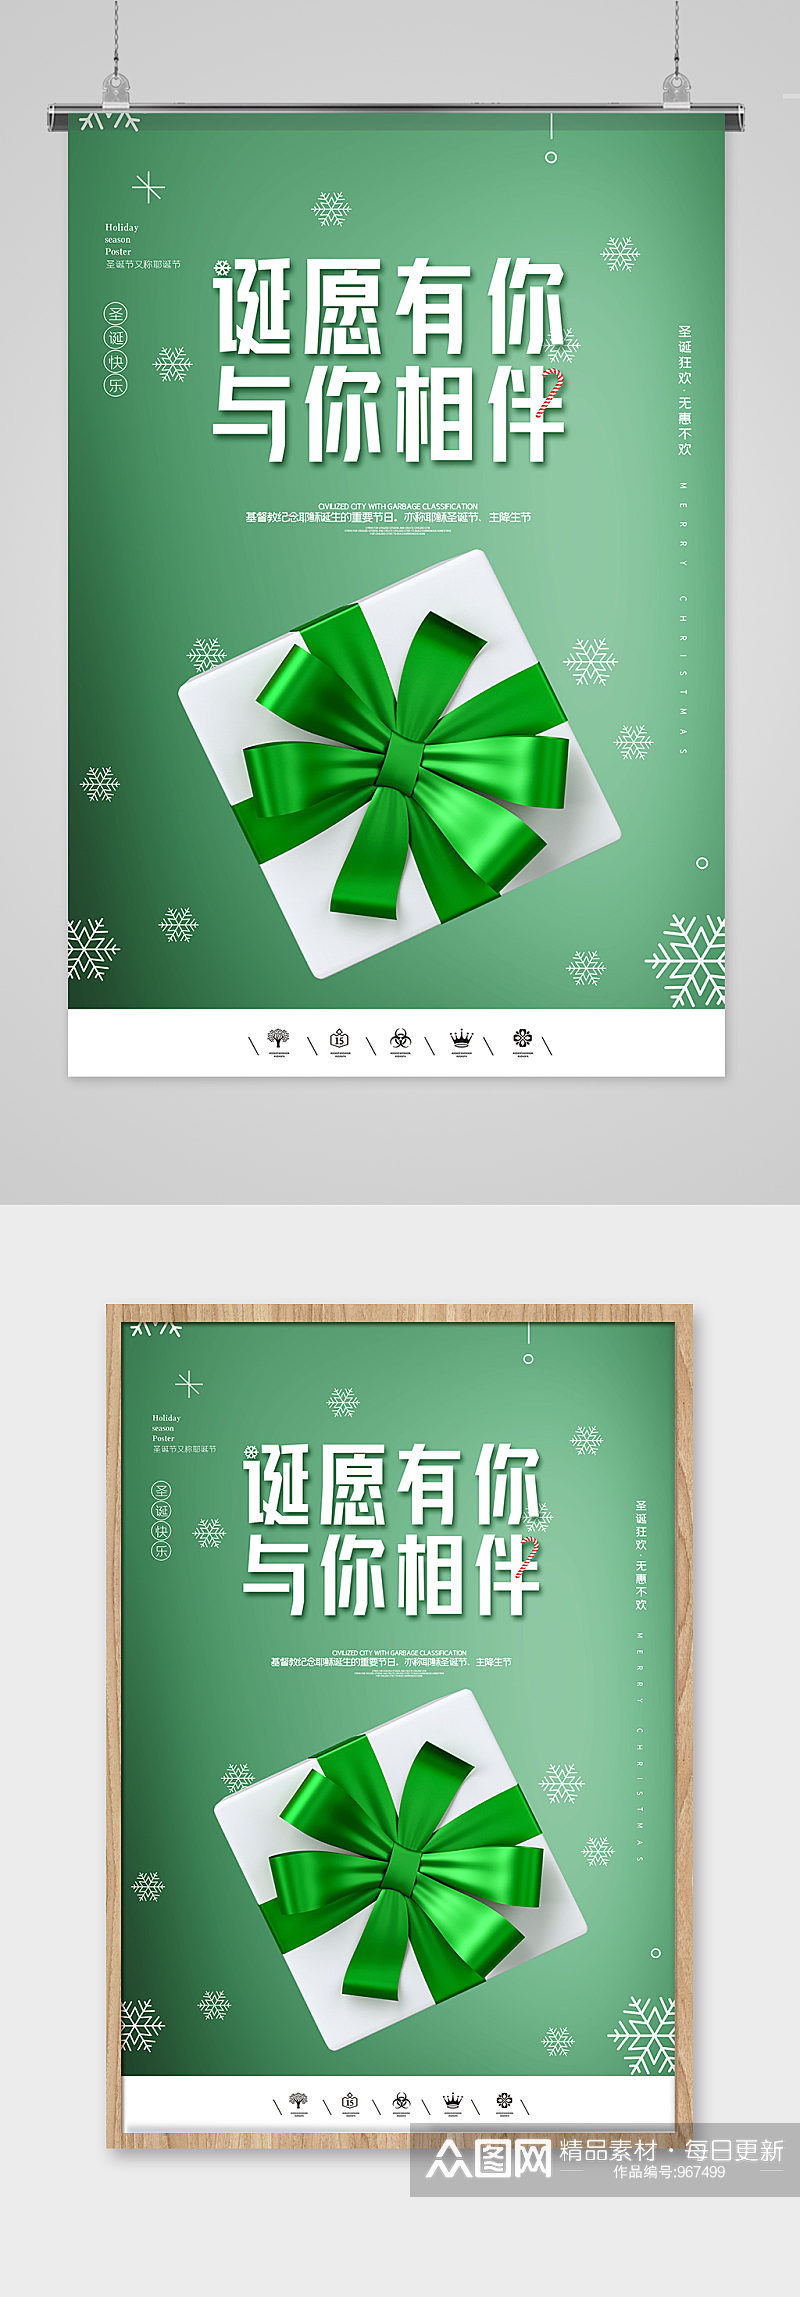 圣诞节极简绿色礼盒海报素材